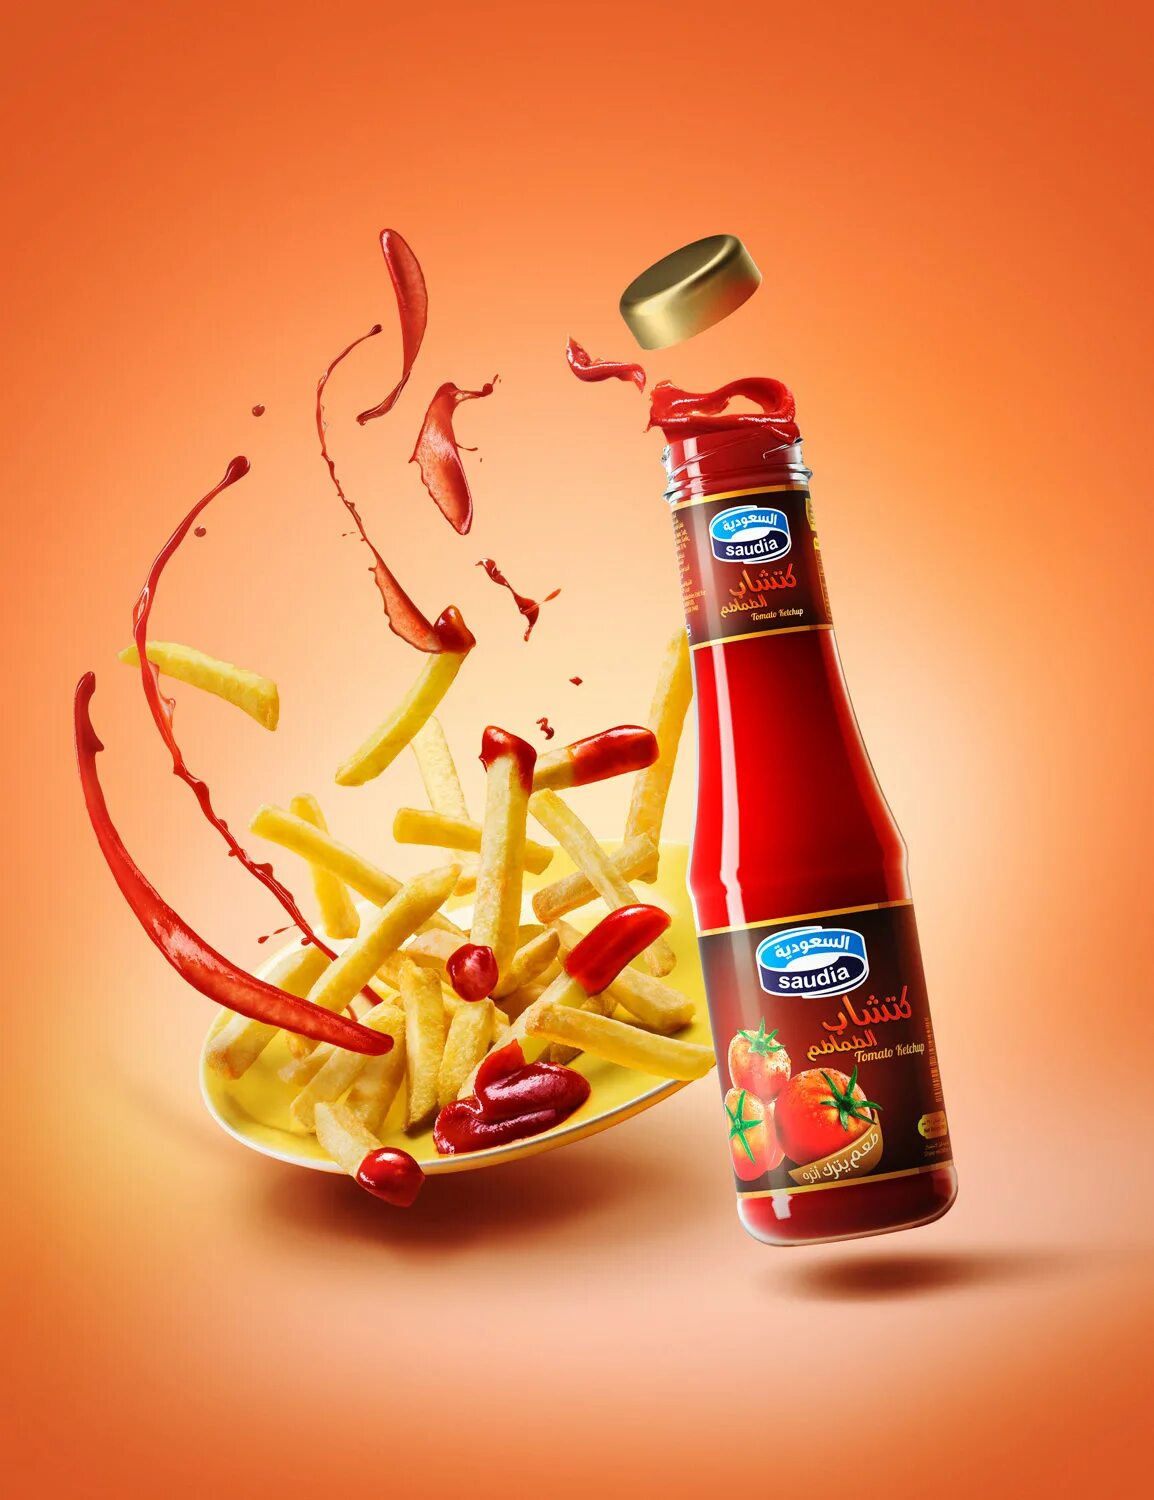 Кетчуп. Соус кетчуп. Реклама соуса. Креативная реклама соуса.